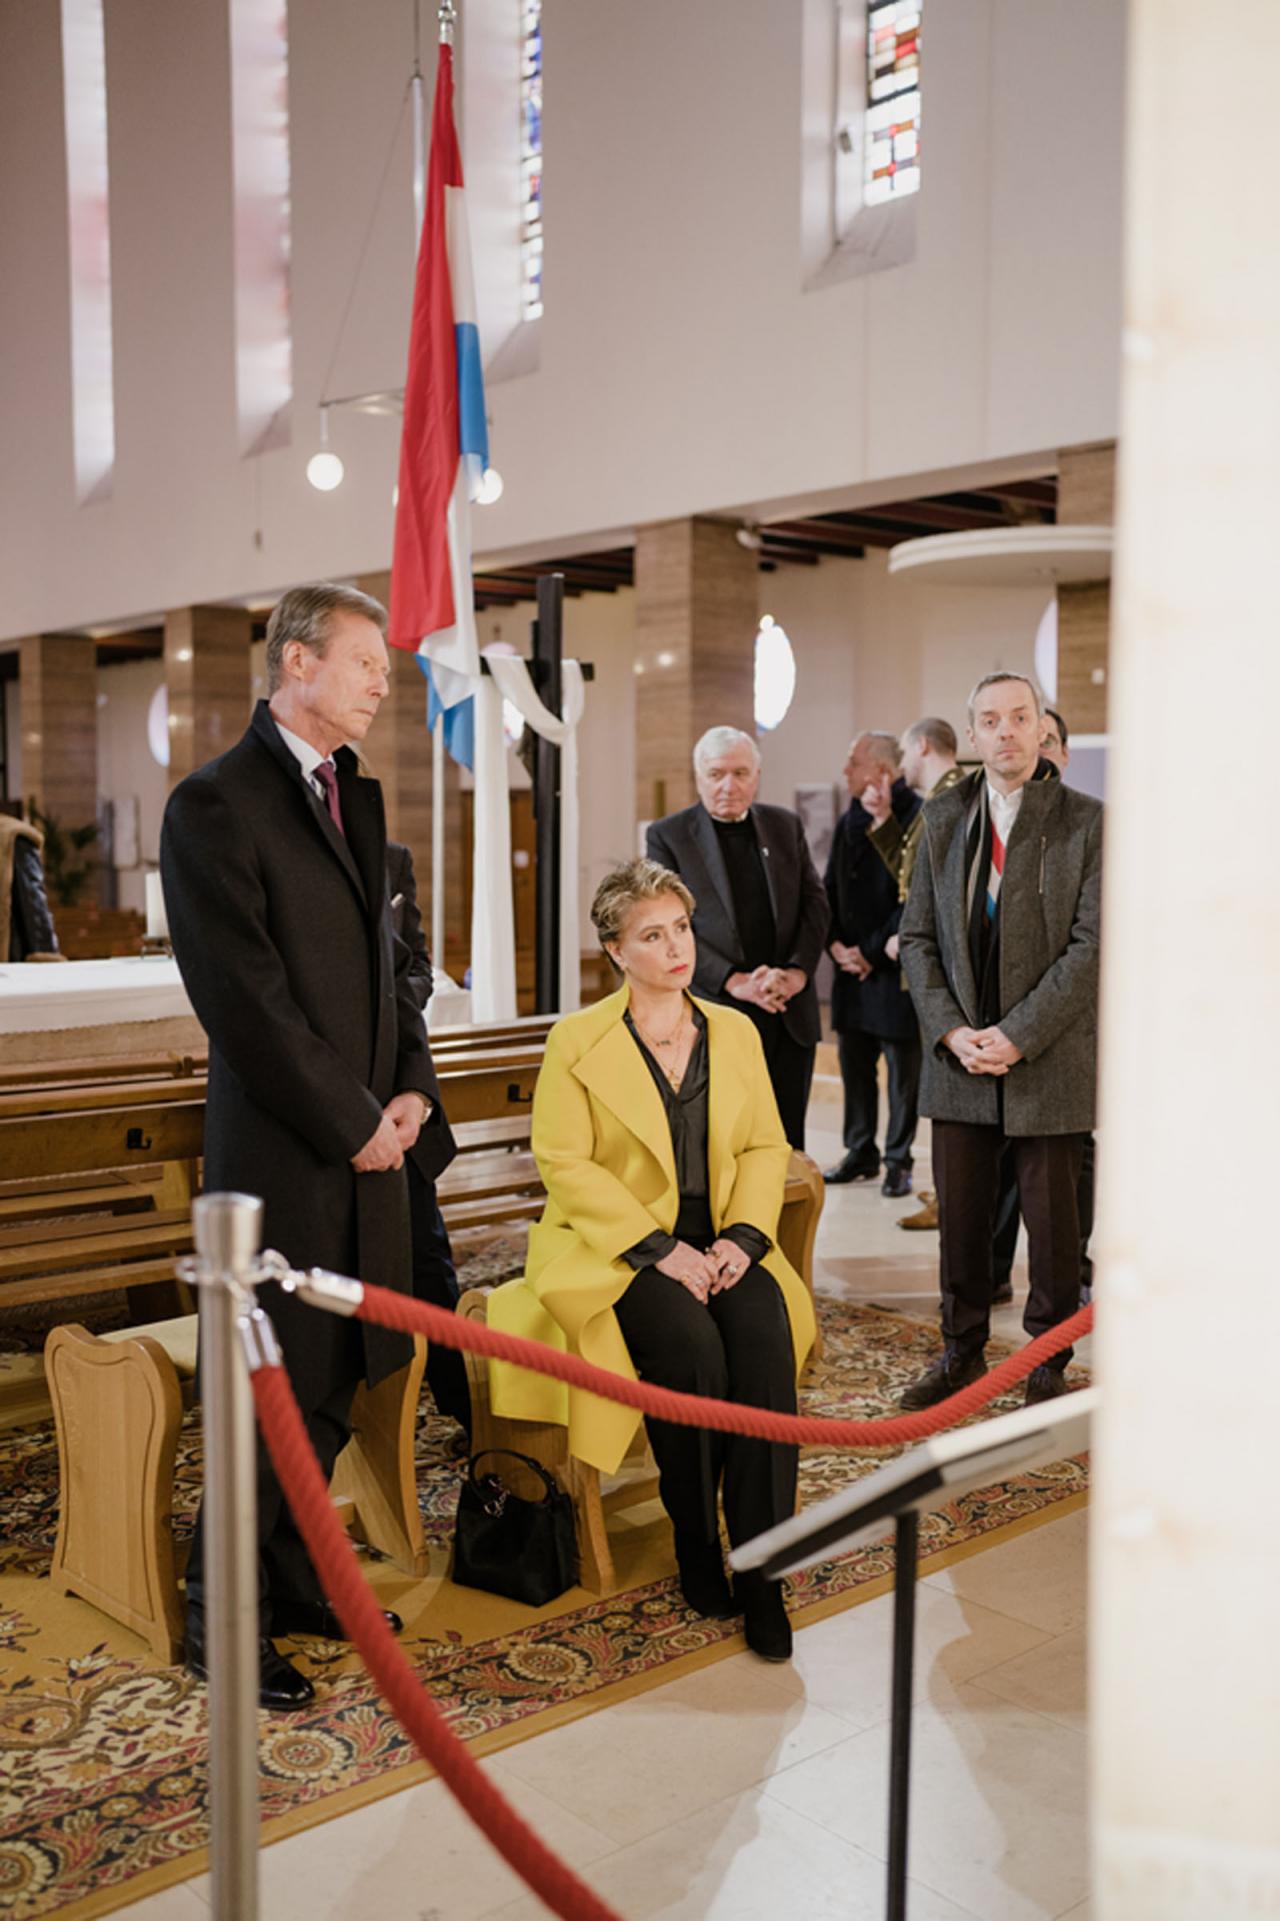 Le Couple grand-ducal observe une réplique du linceul de Turin